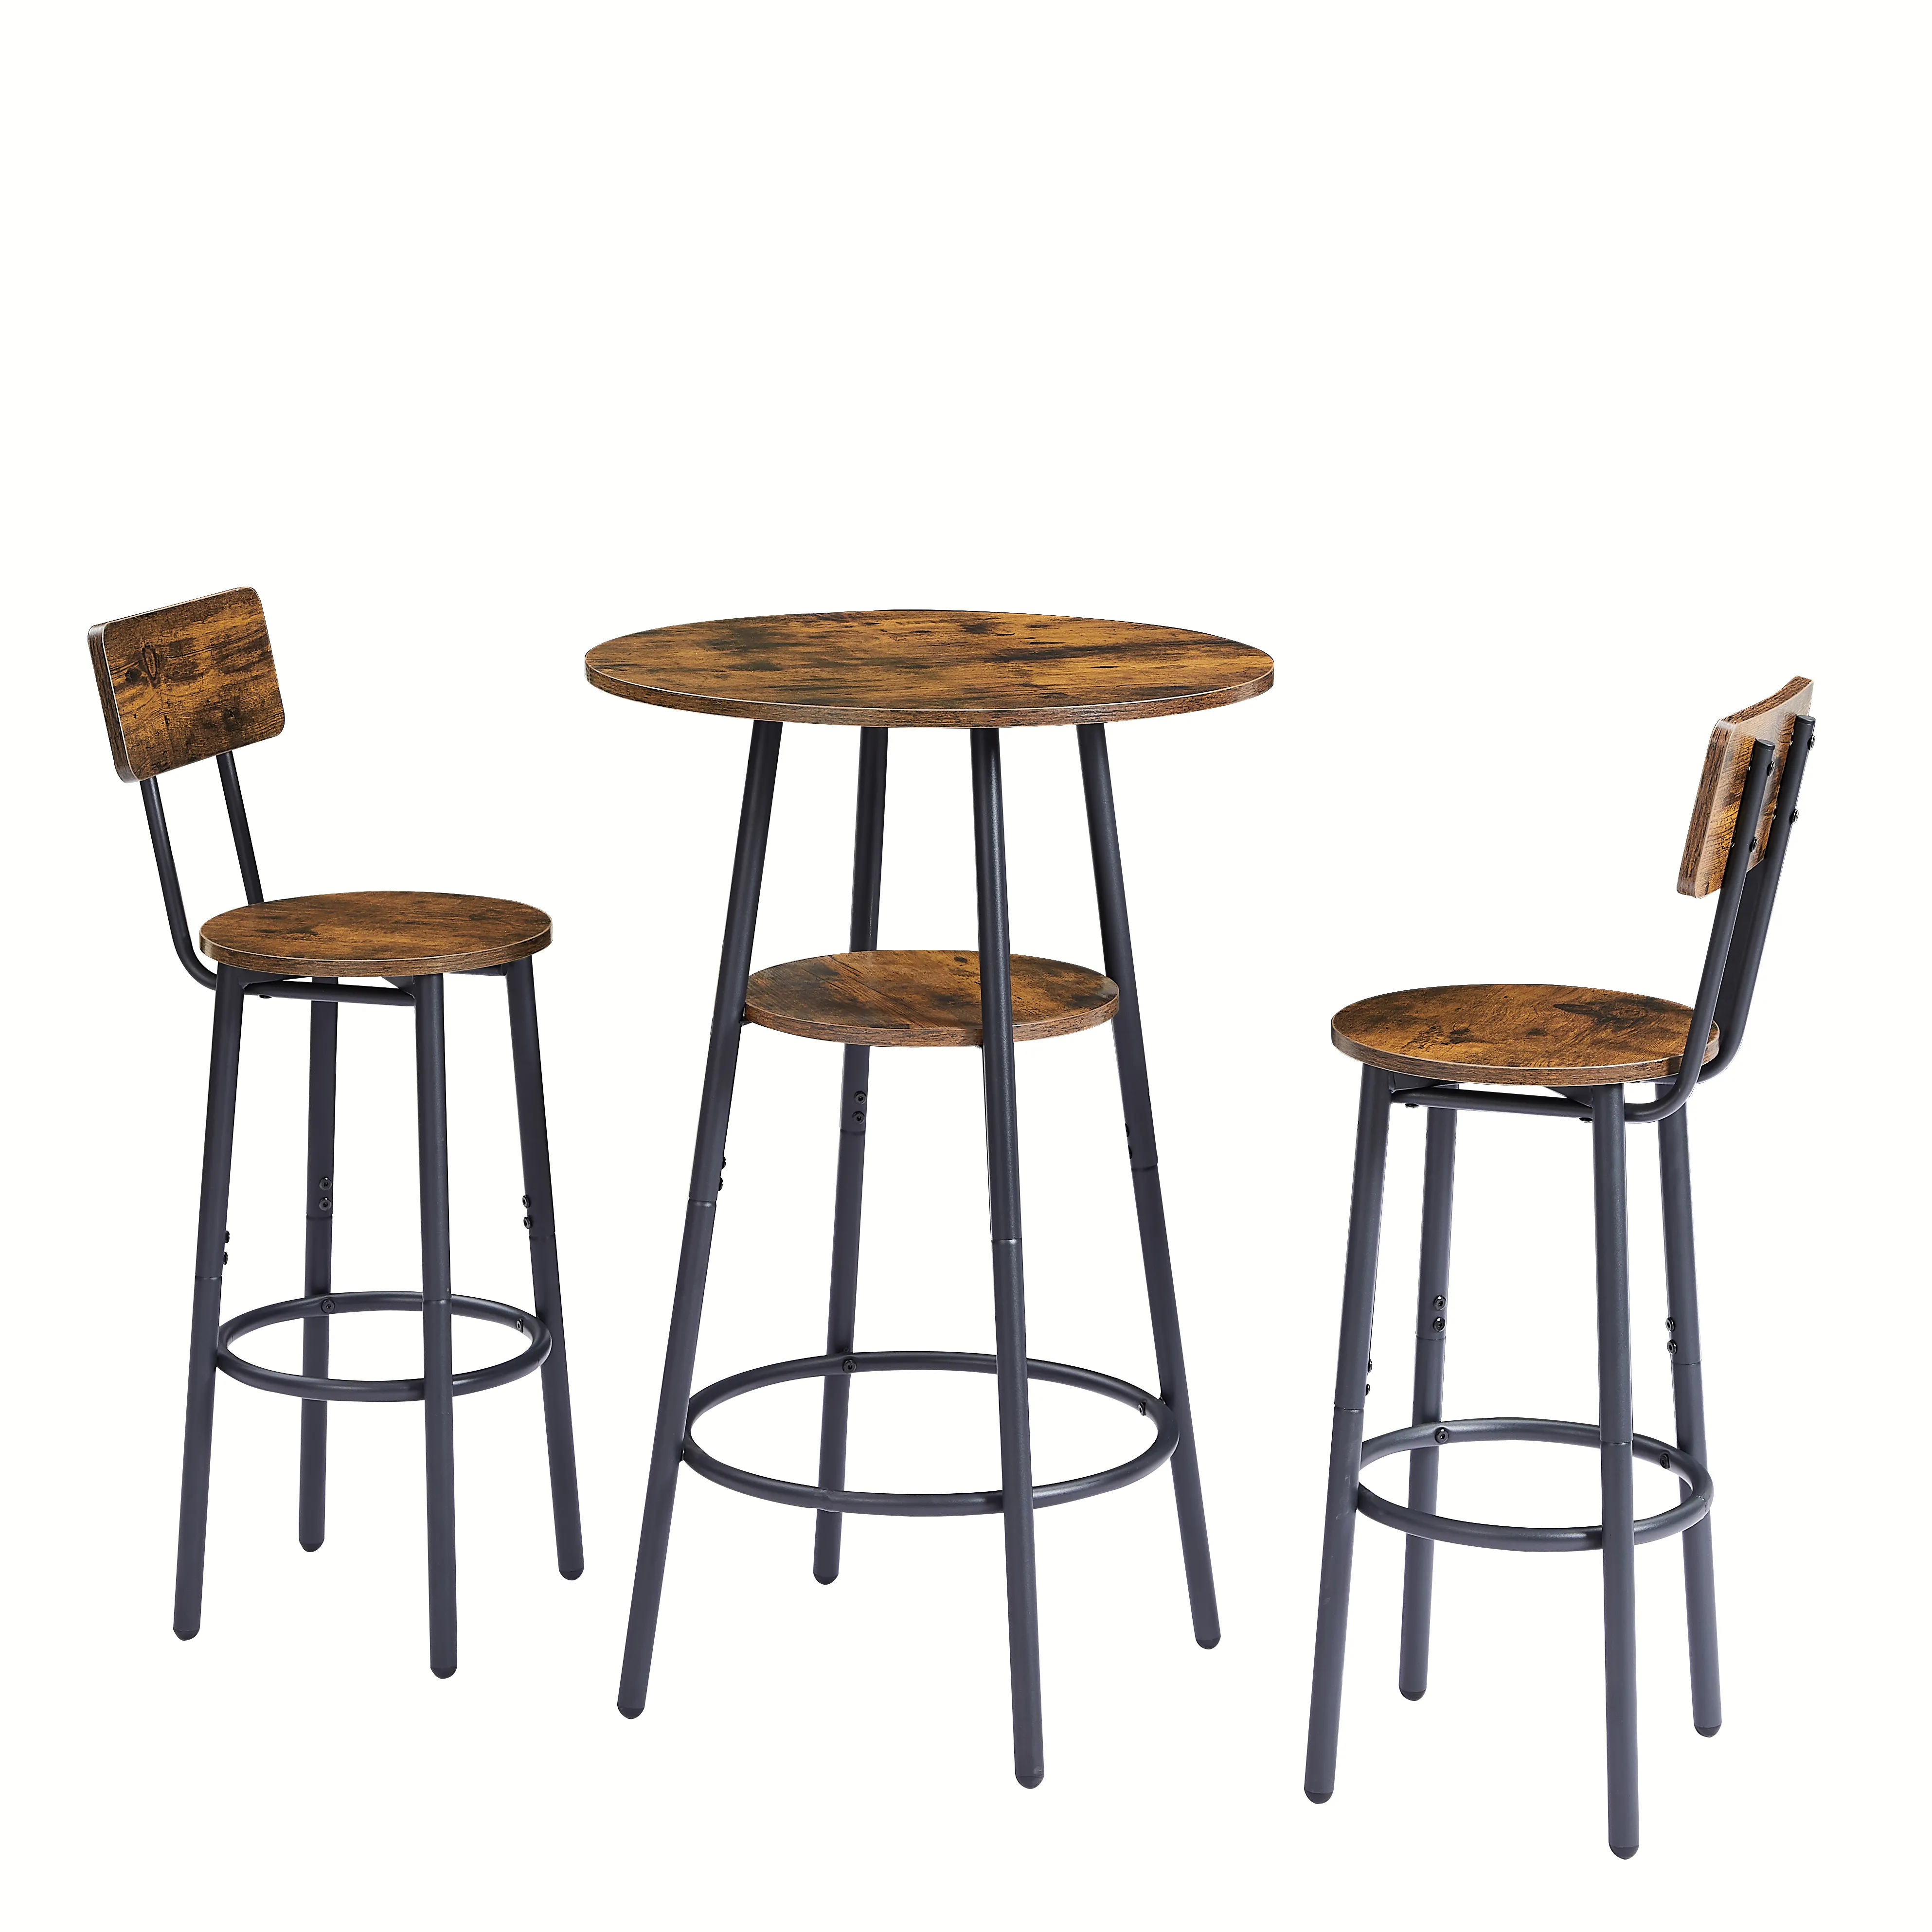 3 шт., обеденный набор для паба, легко собираемый современный круглый барный стол и стул, раздвижной круглый обеденный стол